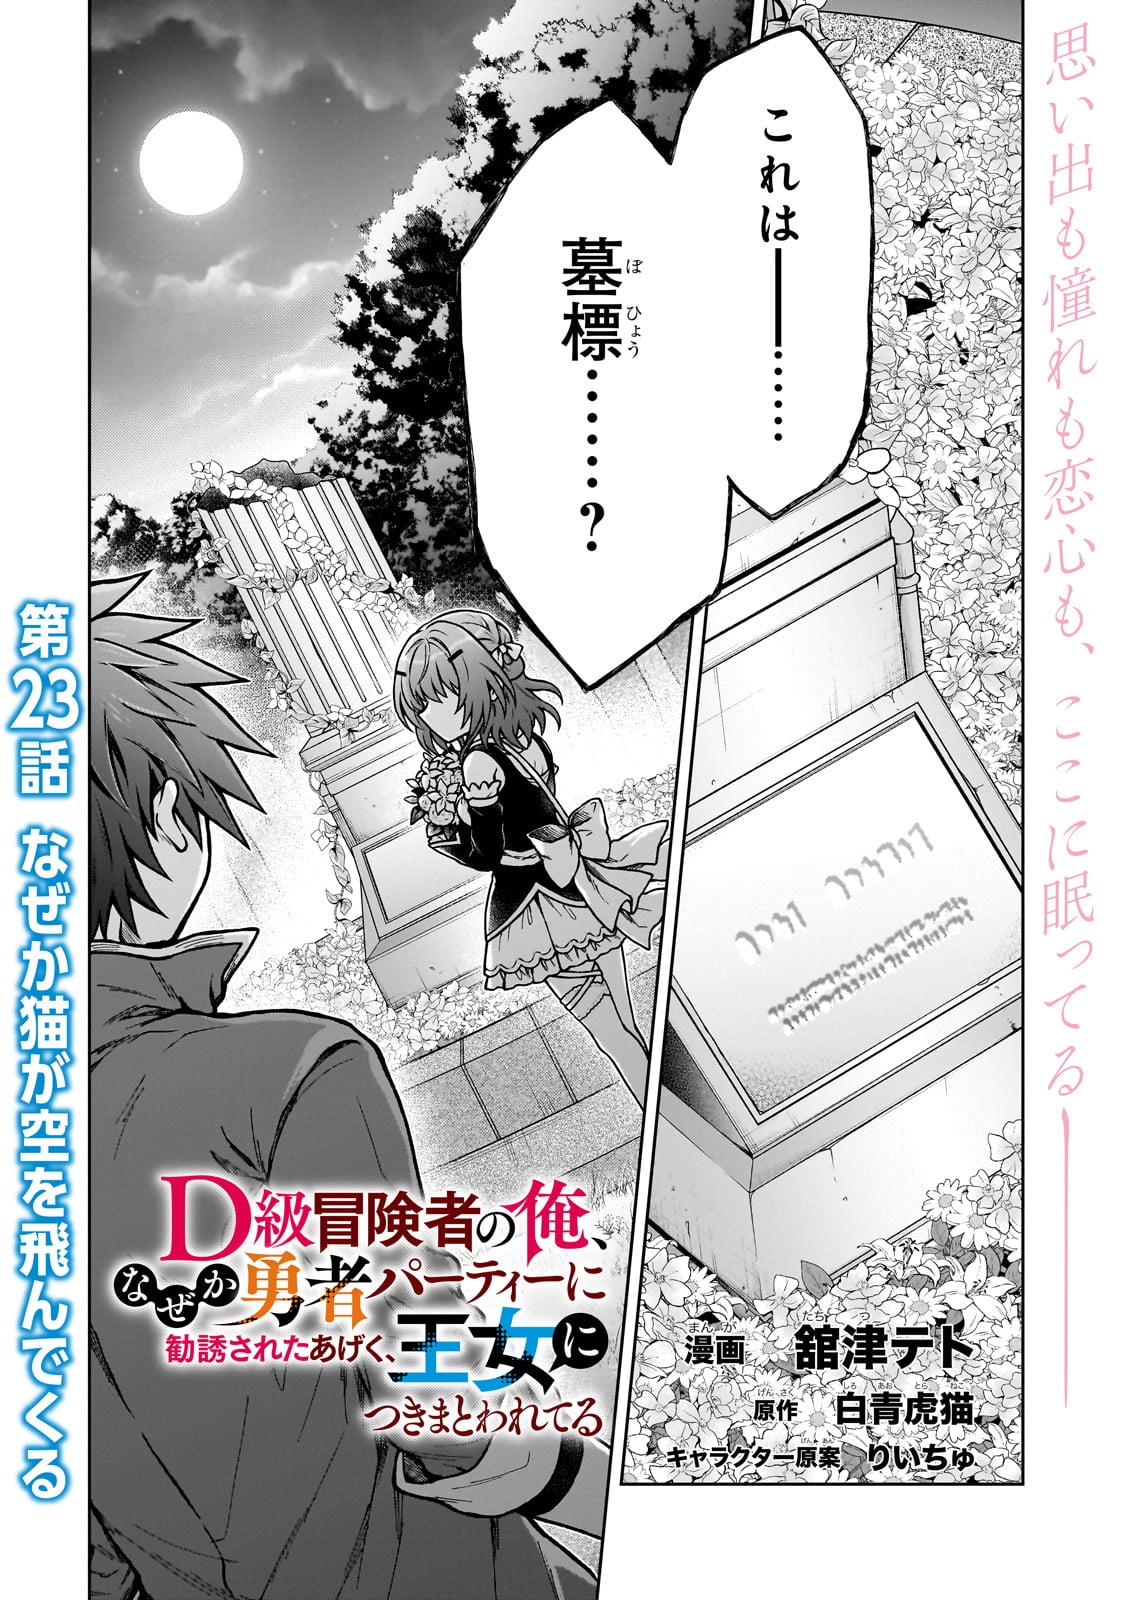 D-kyuu Boukensha no Ore, Naze ka Yuusha Party ni Kanyuu Sareta Ageku, Oujo ni Tsukima Towareteru - Chapter 23 - Page 1